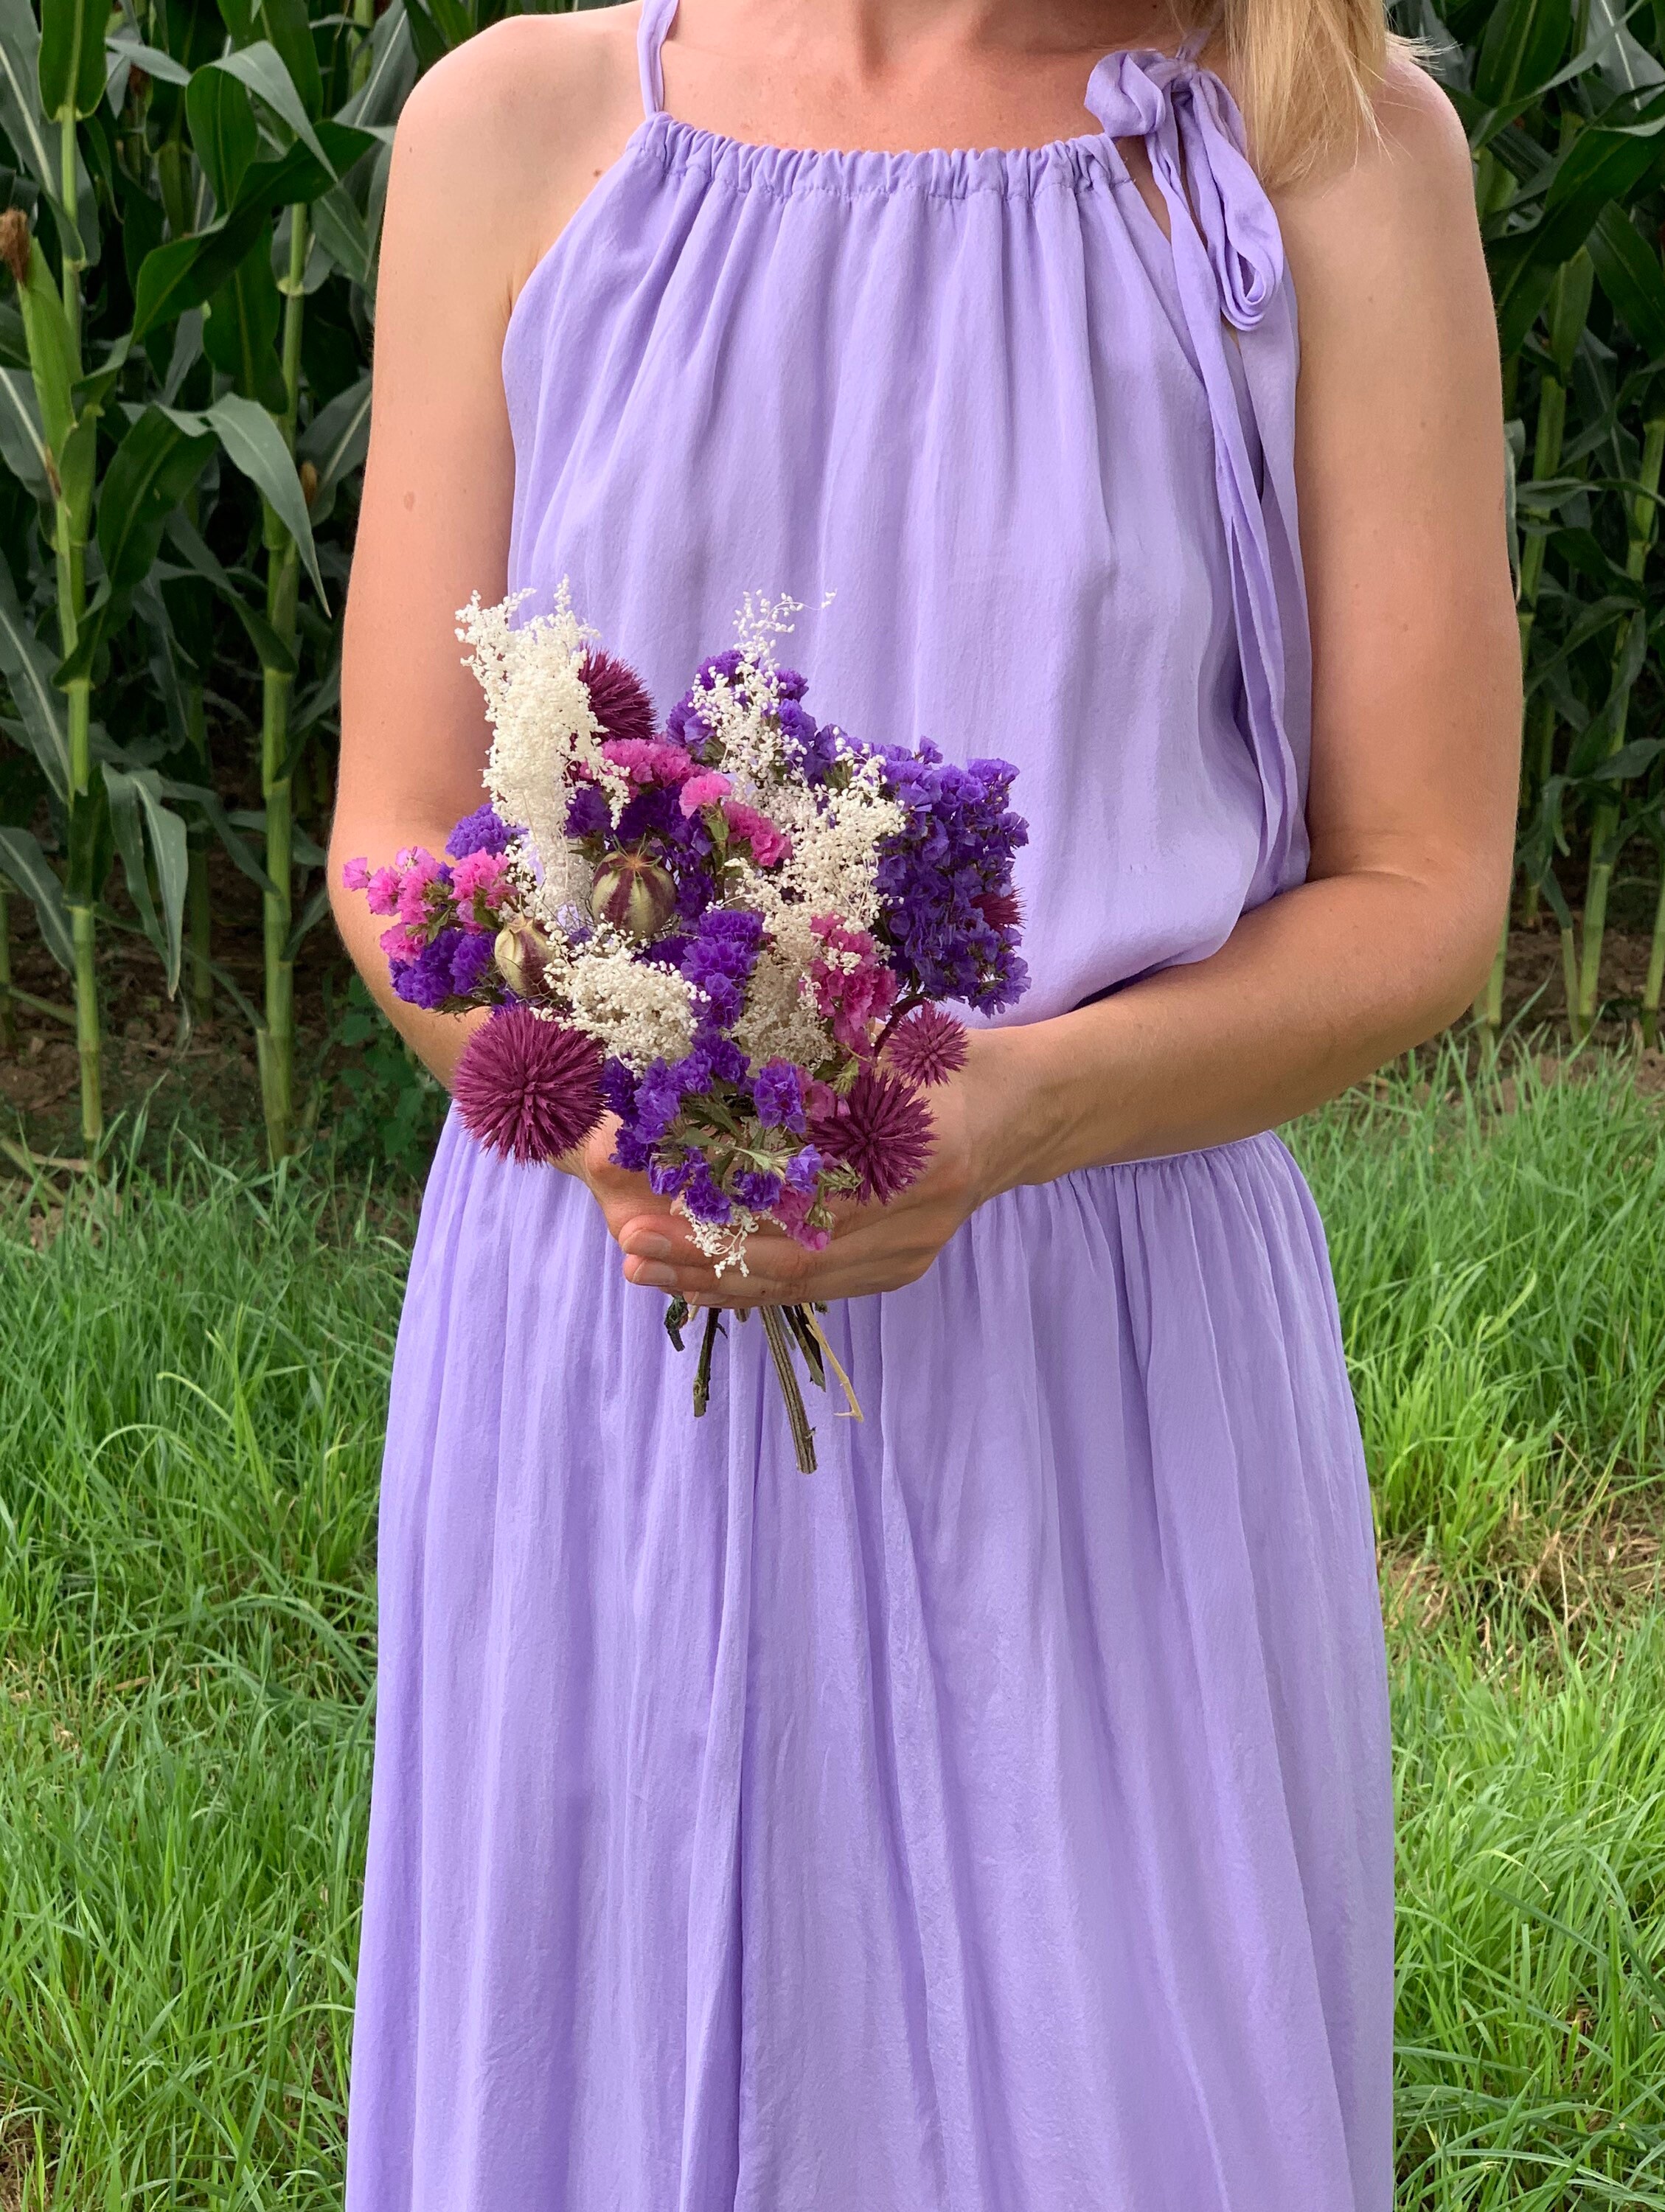 Fleurs de violette séchées - Etsy France